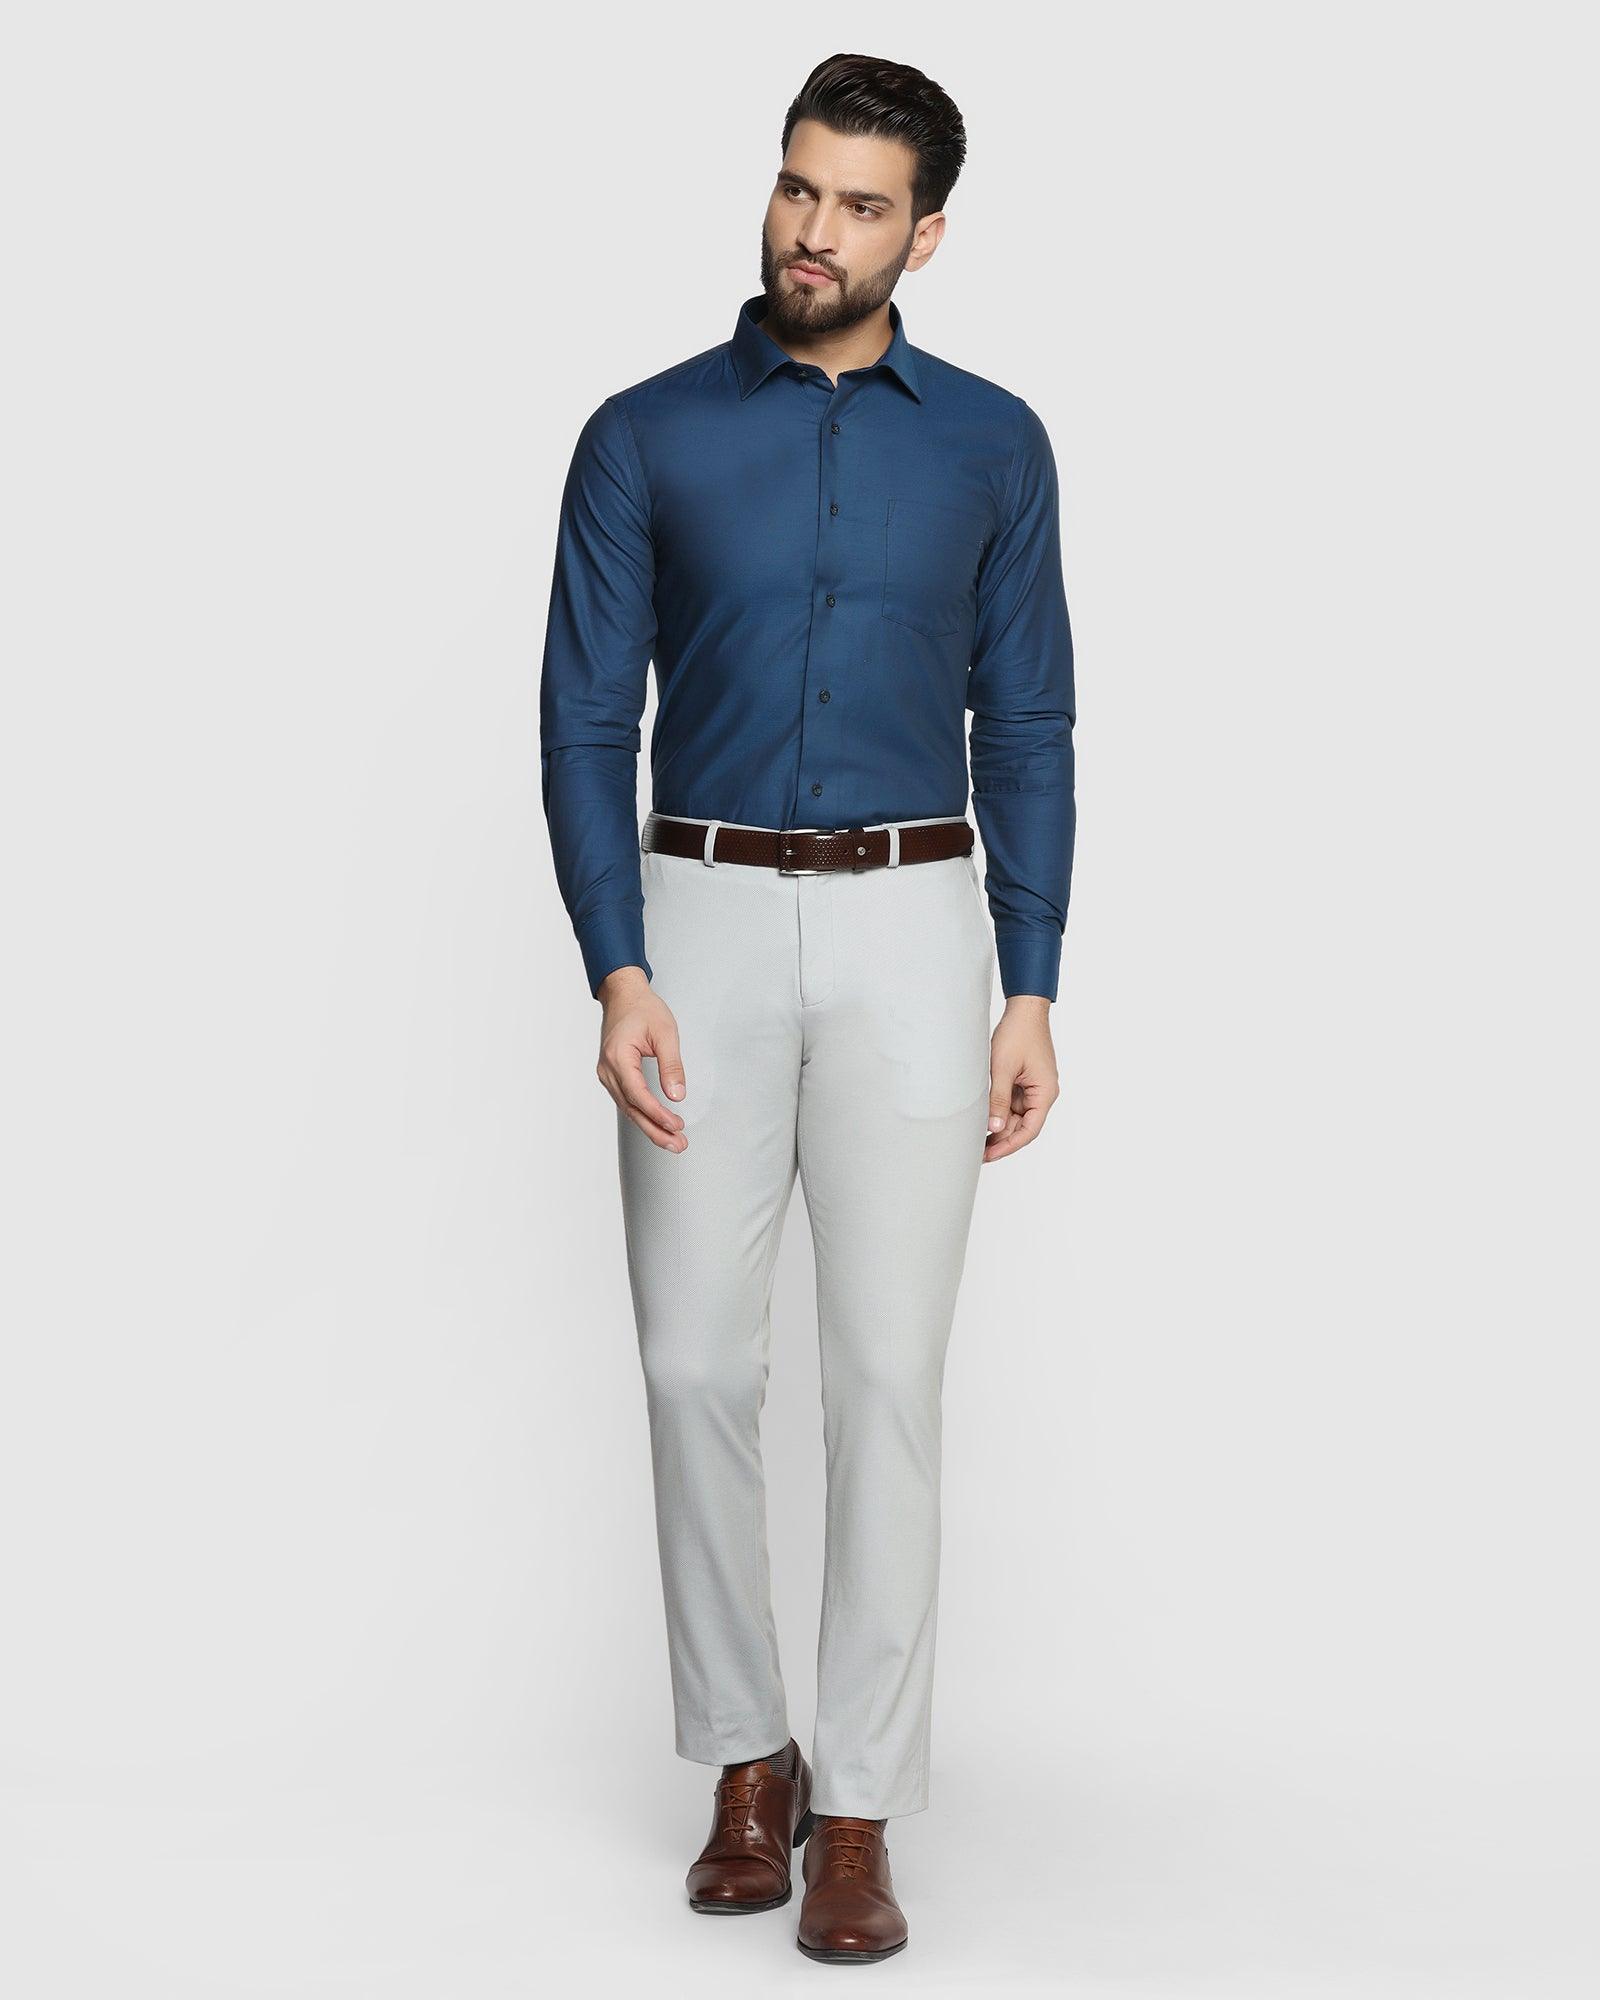 6 Blue shirt matching pant combination outfit ideas Dark  light   Anubhav Kumar